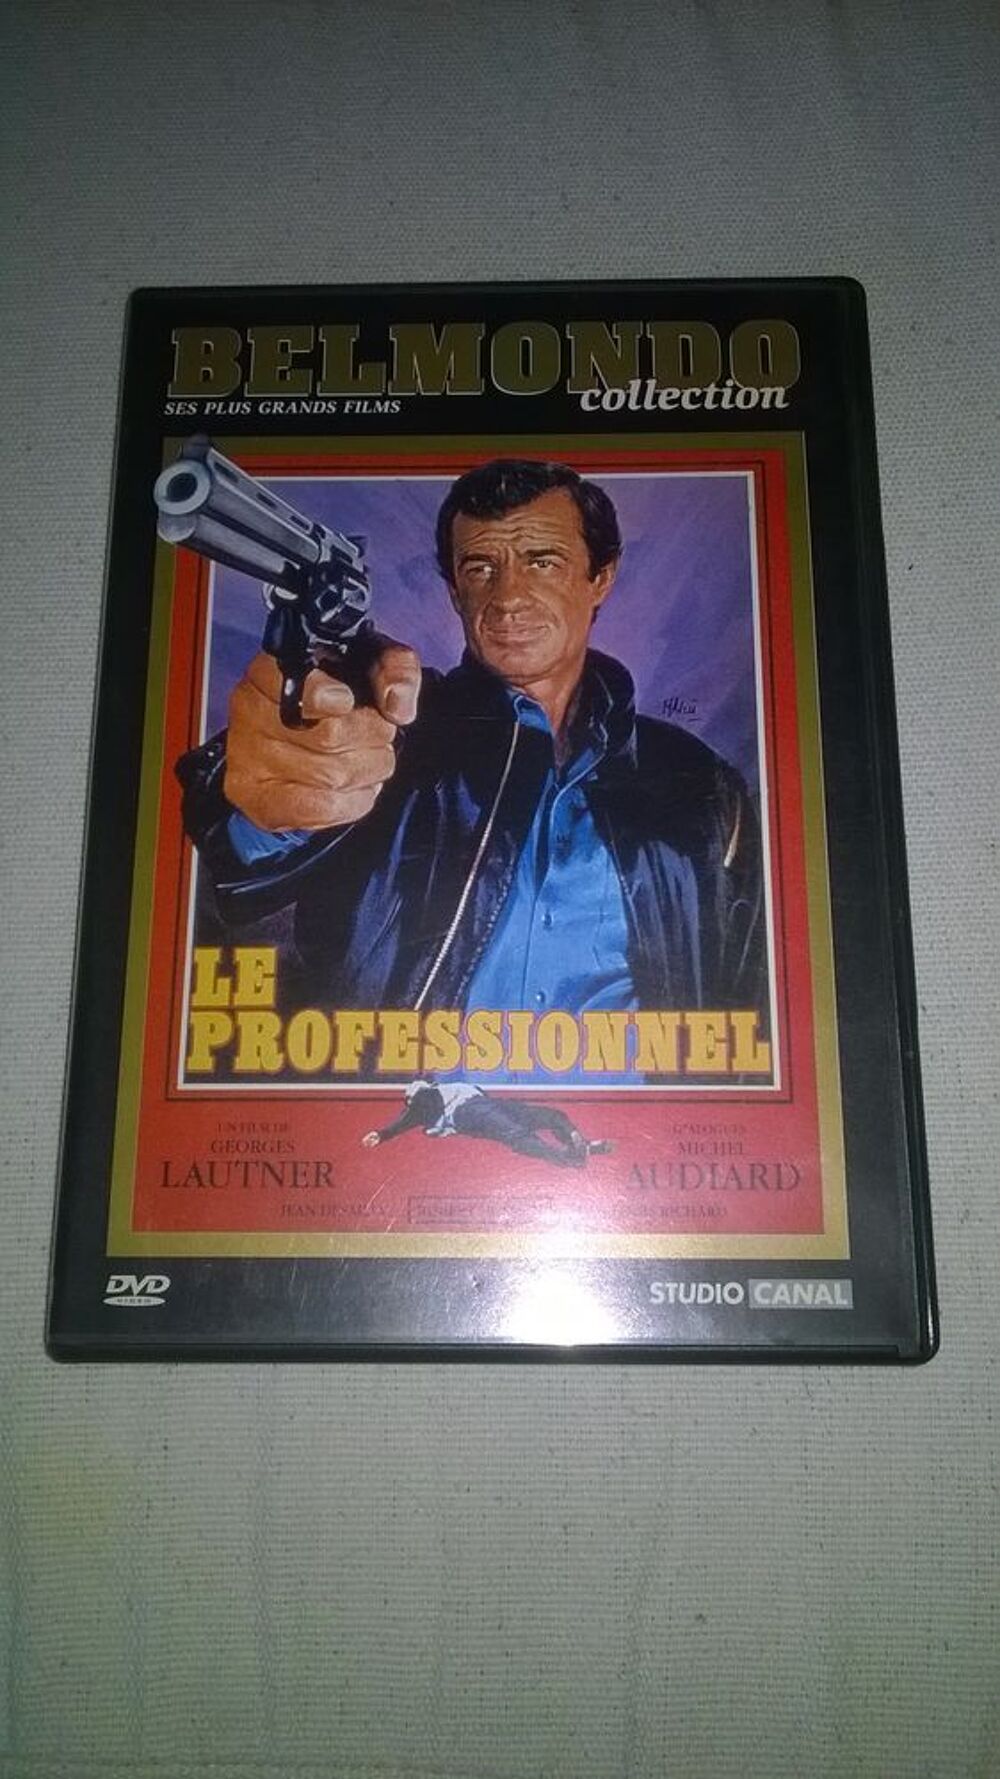 DVD BELMONDO
LE PROFESSIONNEL
1981
Excellent etat
Agent DVD et blu-ray